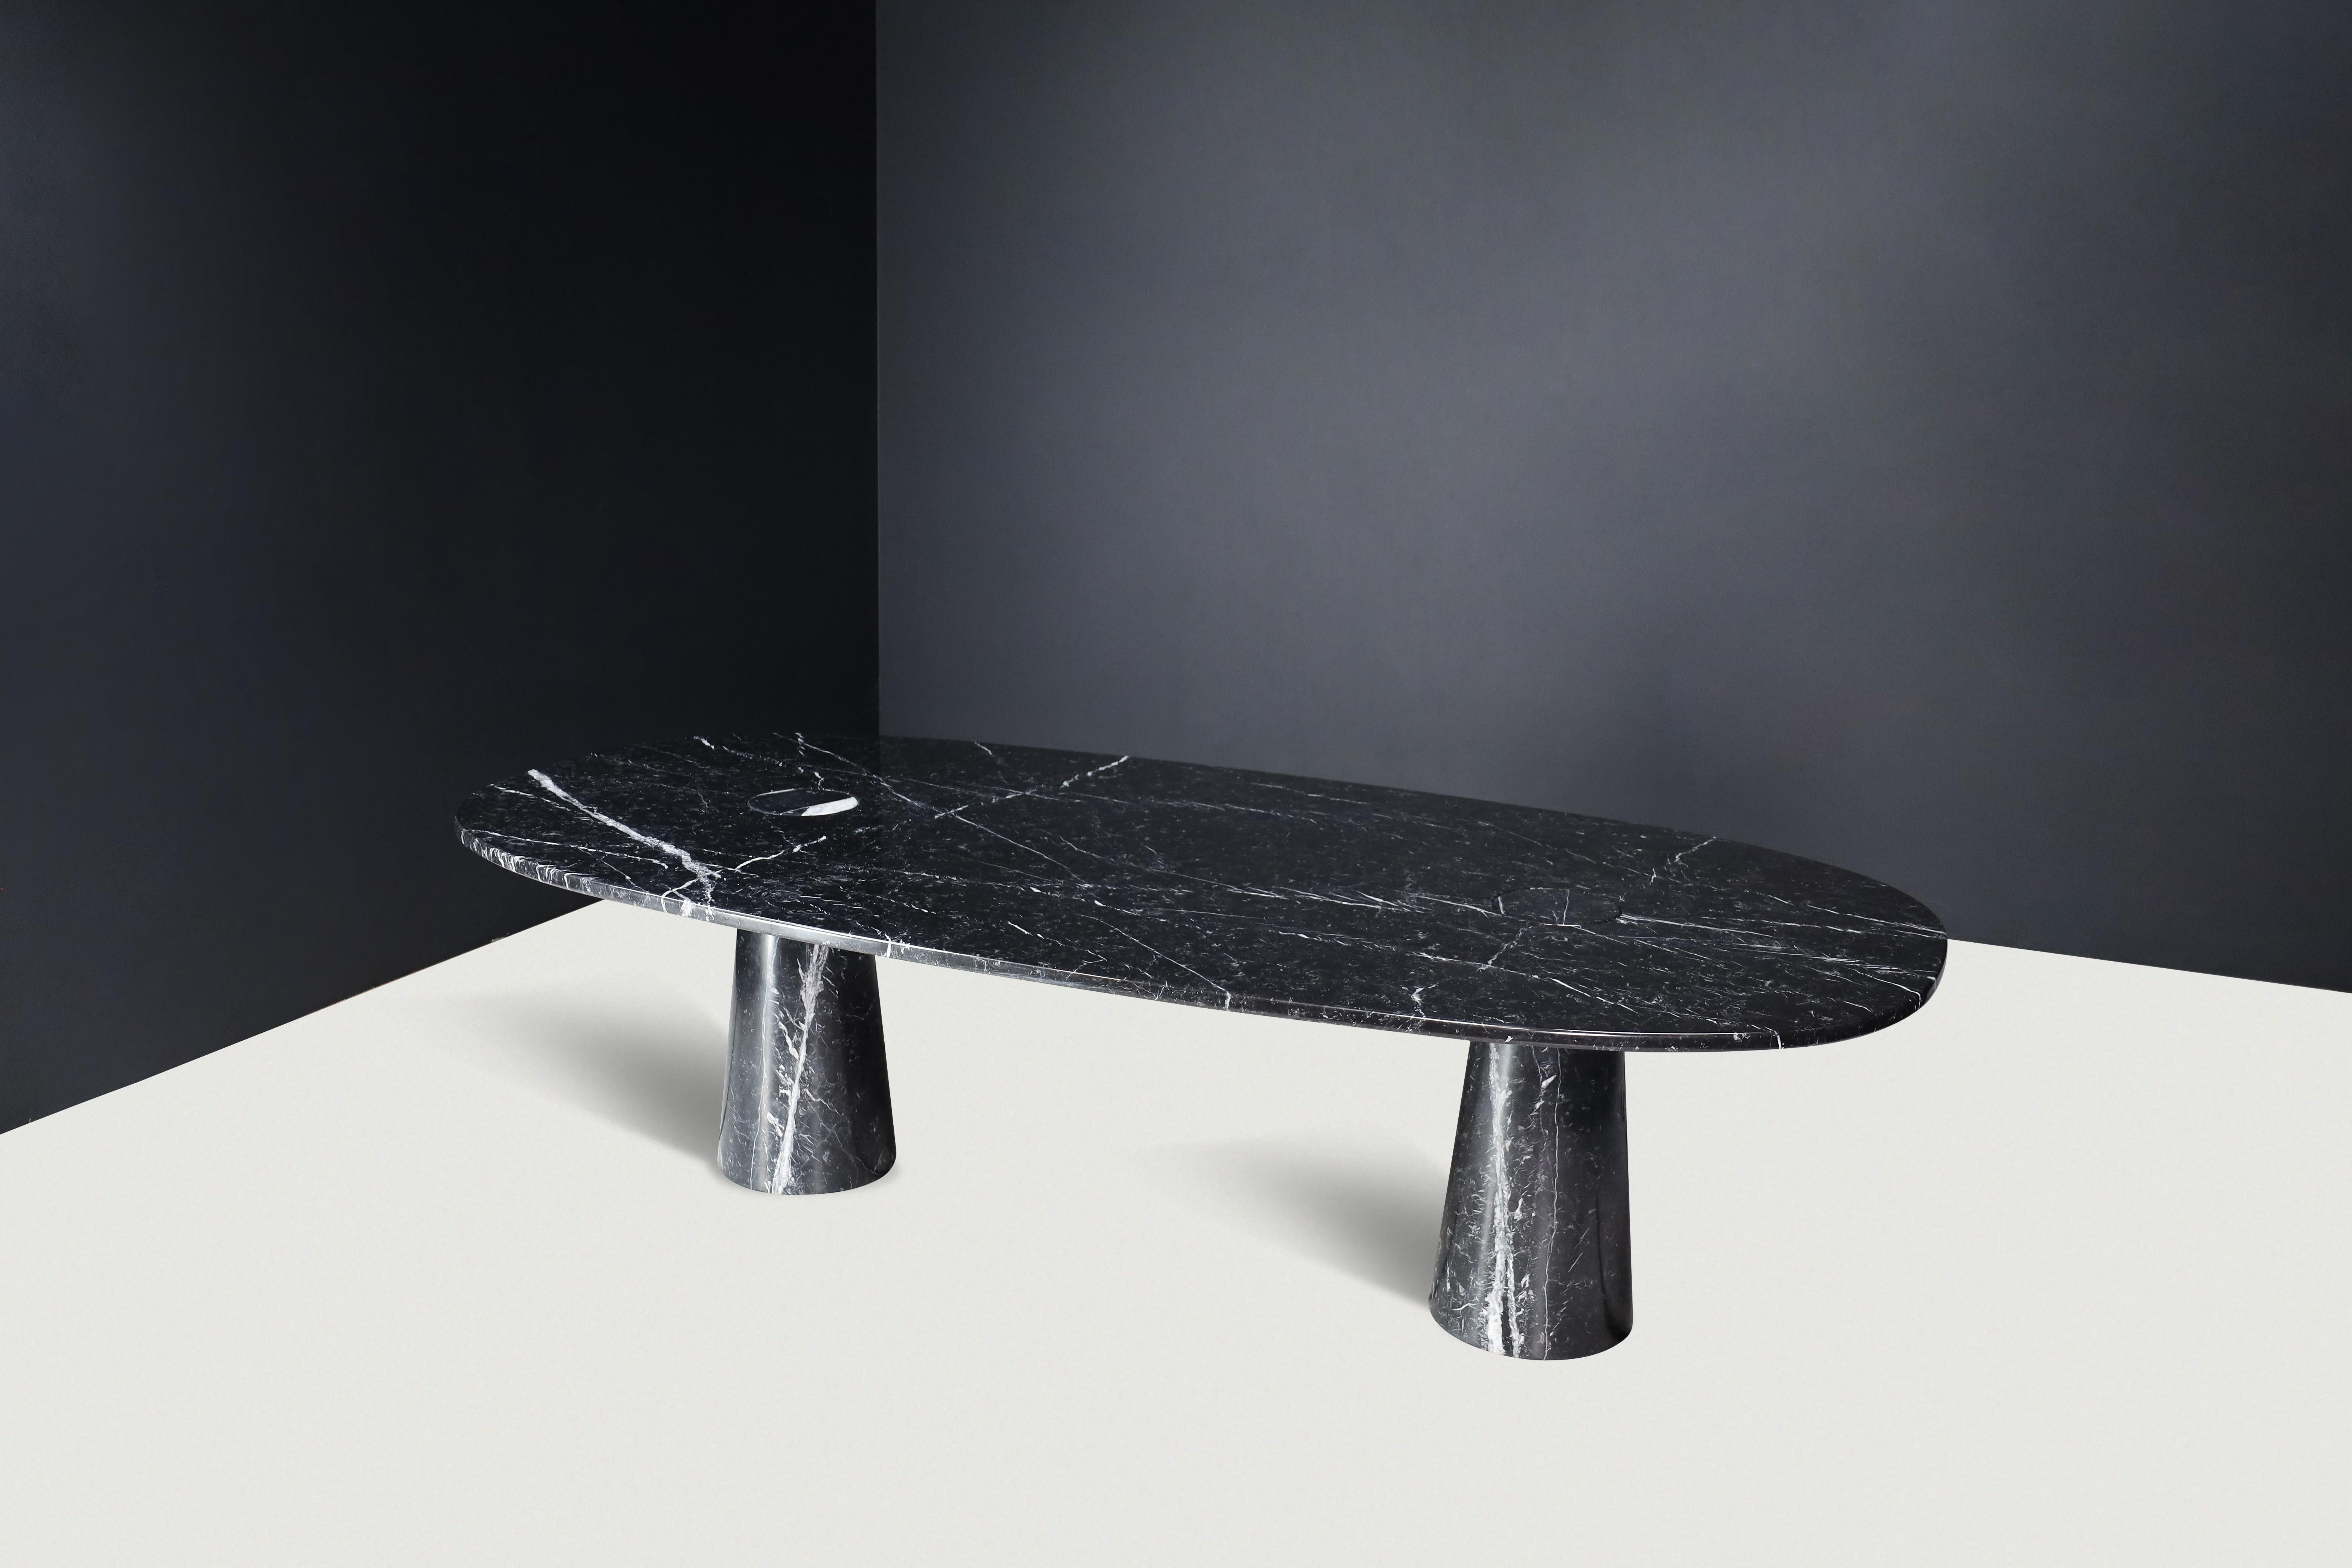 Angelo Mangiarotti für Skipper 'Eros' Großer ovaler Esstisch oder Schreibtisch aus schwarzem Marquina-Marmor, Italien, 1970er Jahre.

Dieser beeindruckende skulpturale Tisch oder Schreibtisch, entworfen von Angelo Mangiarotti, ist ein Beispiel für